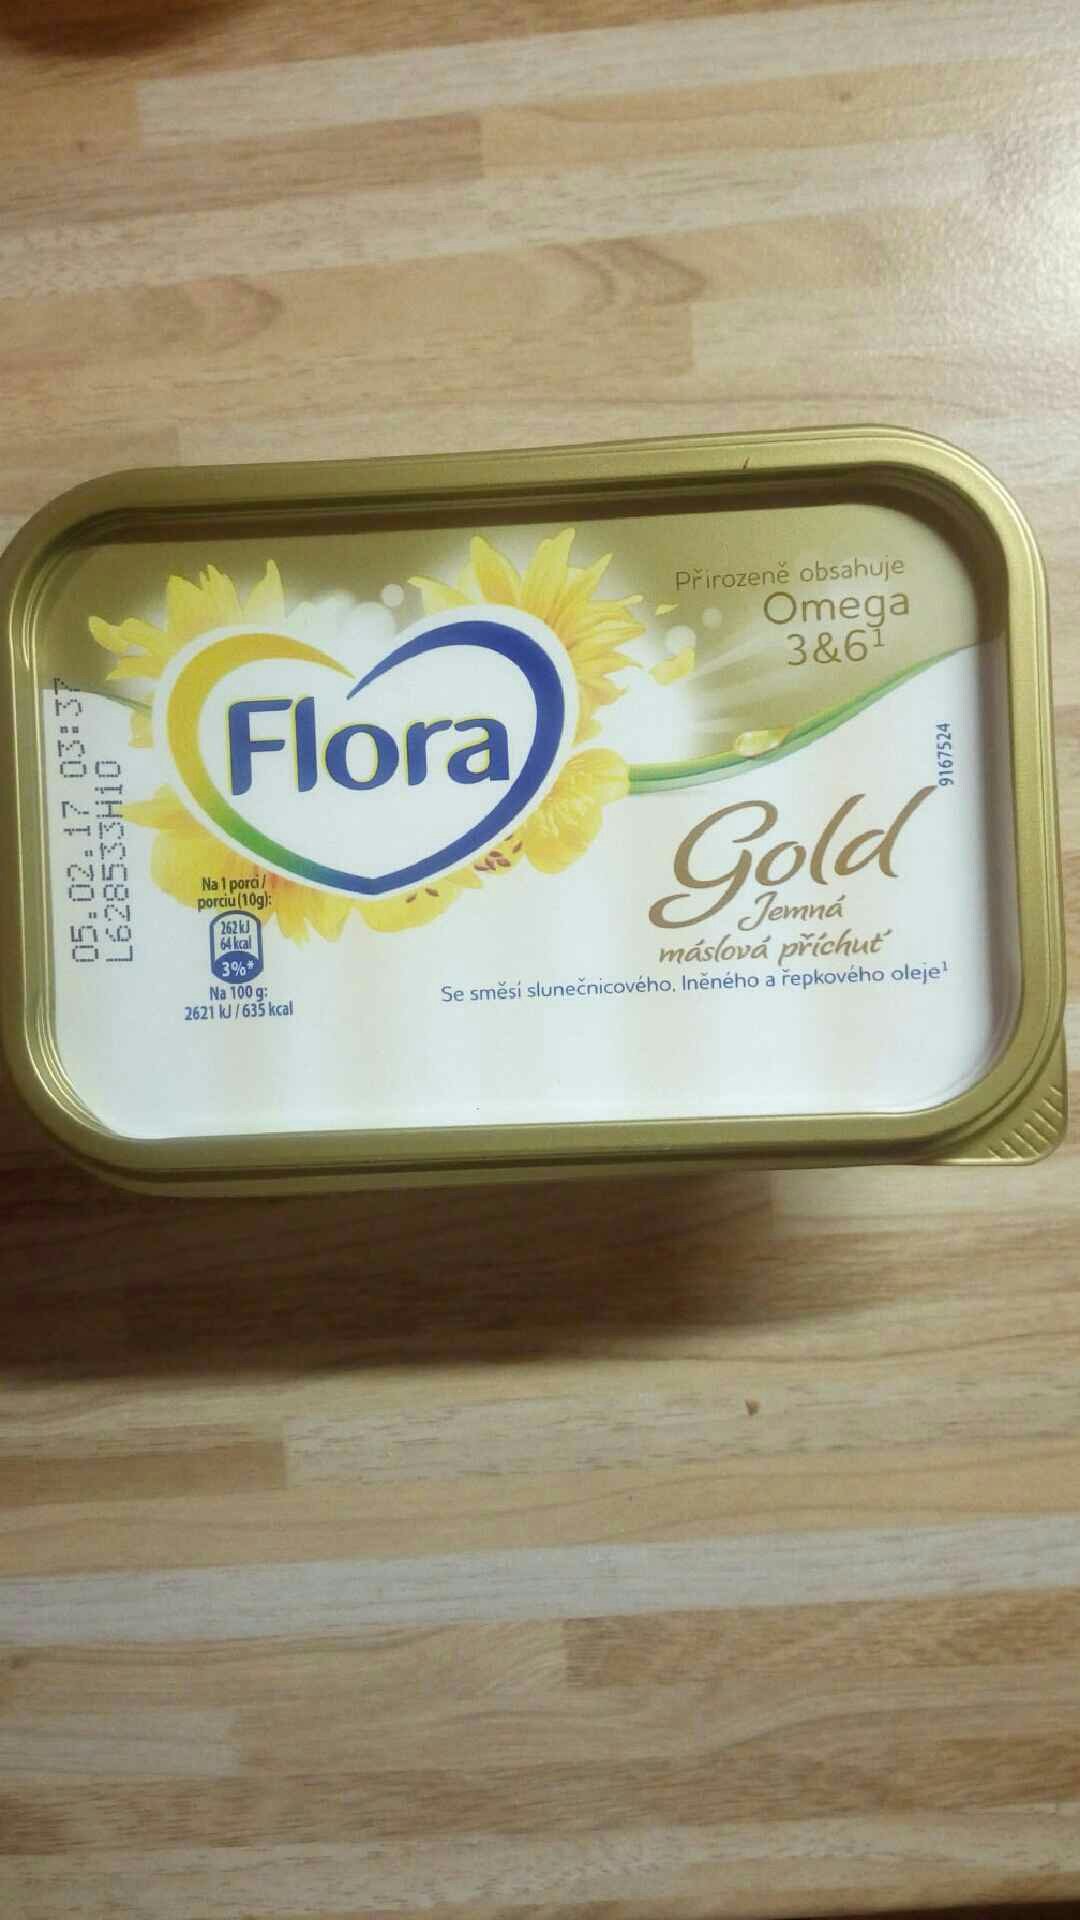 Co obsahuje Flora?